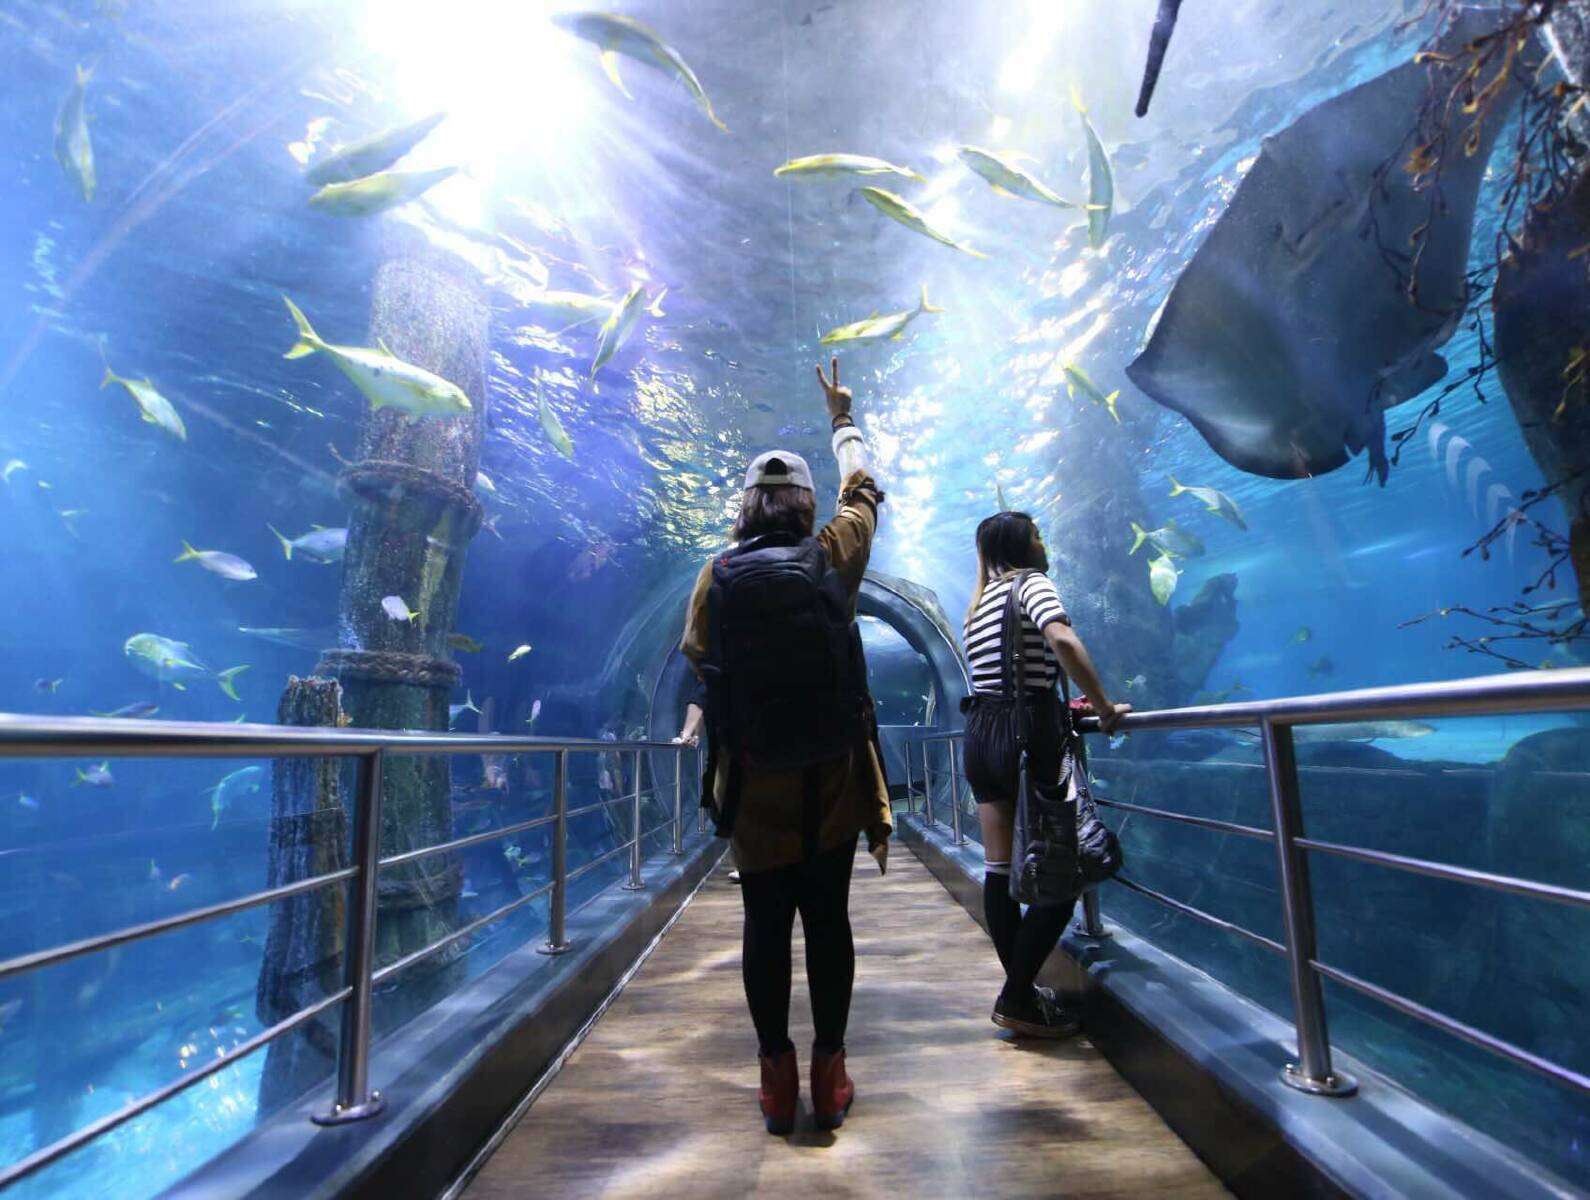 sea life melbourne aquarium virtual tour